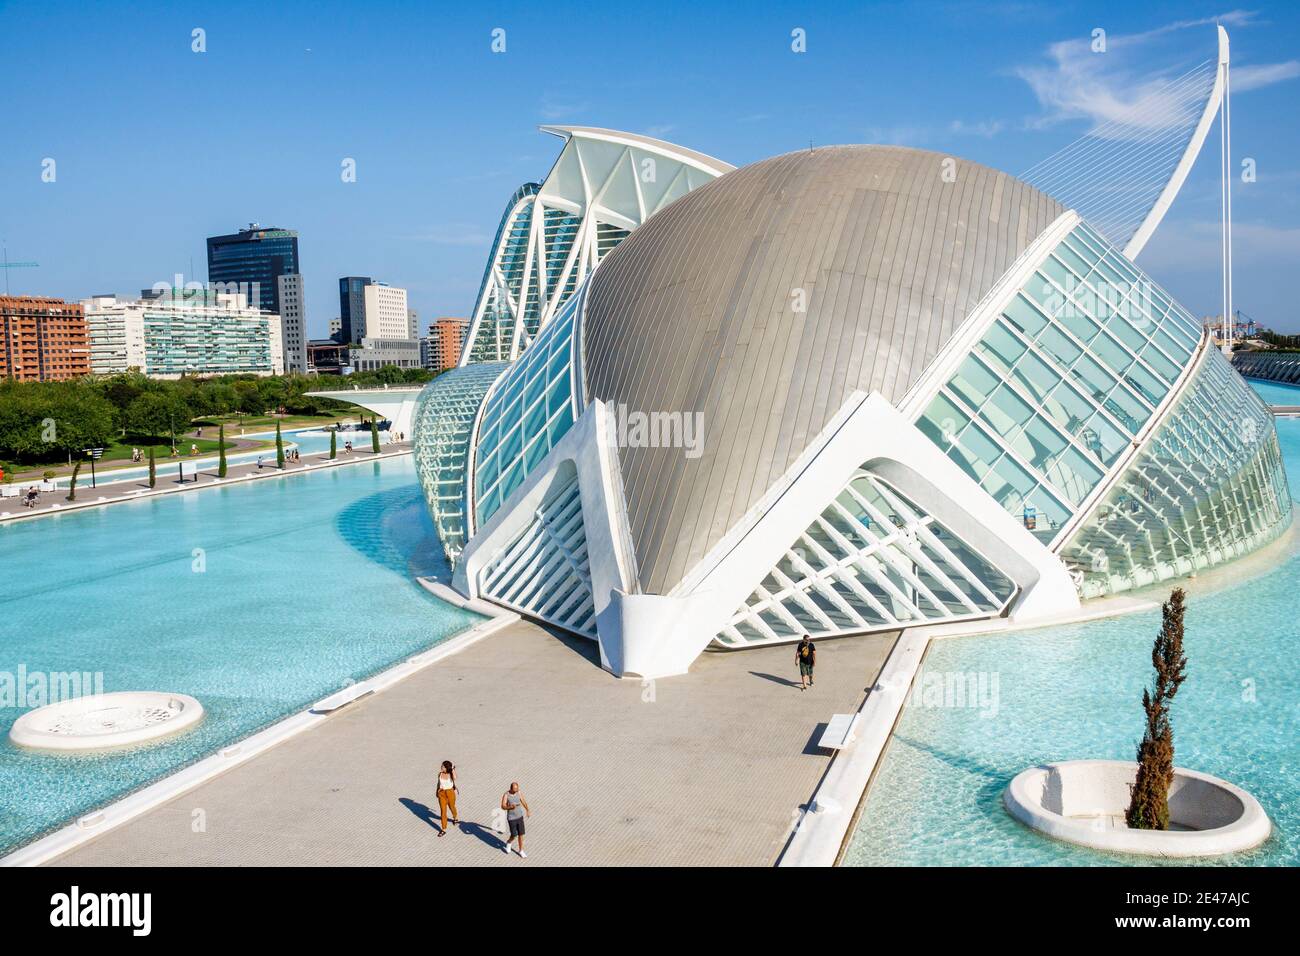 Spanien Valencia Ciudad de las Artes y las Ciencias Der Künste und Wissenschaften Santiago Calatrava Architektur L'Hemisferic Planetarium laserium Außen Stockfoto